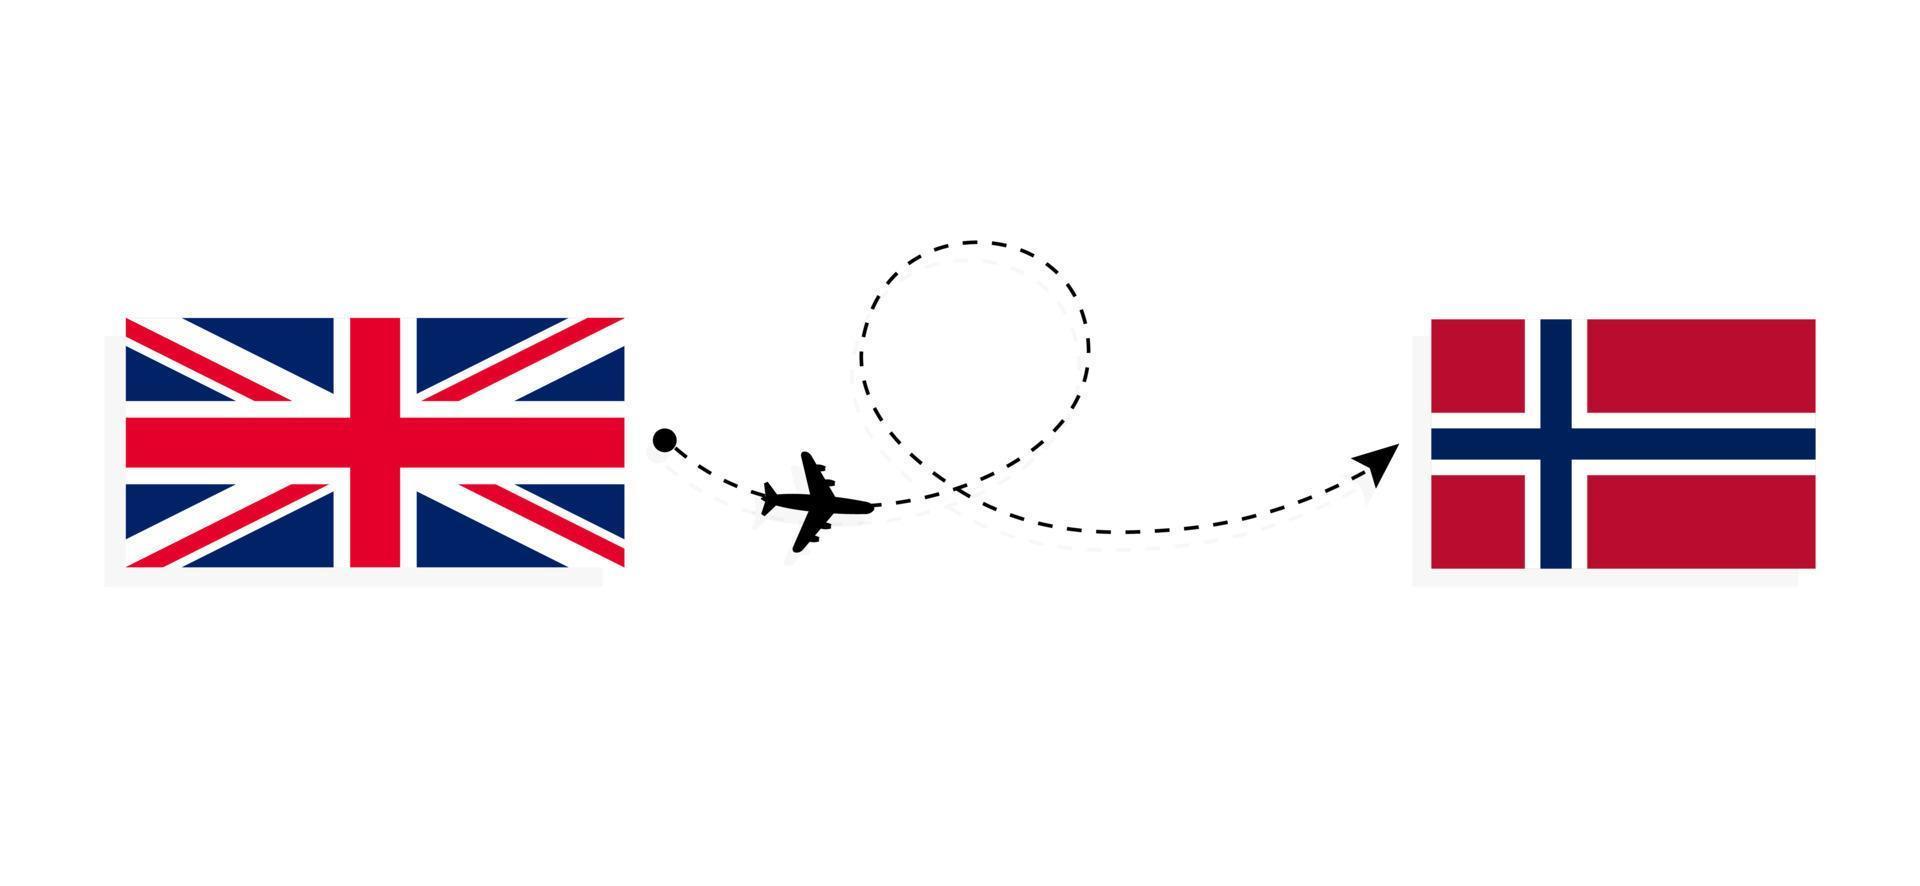 flyg och resor från Storbritannien till norge med passagerarflygplan vektor